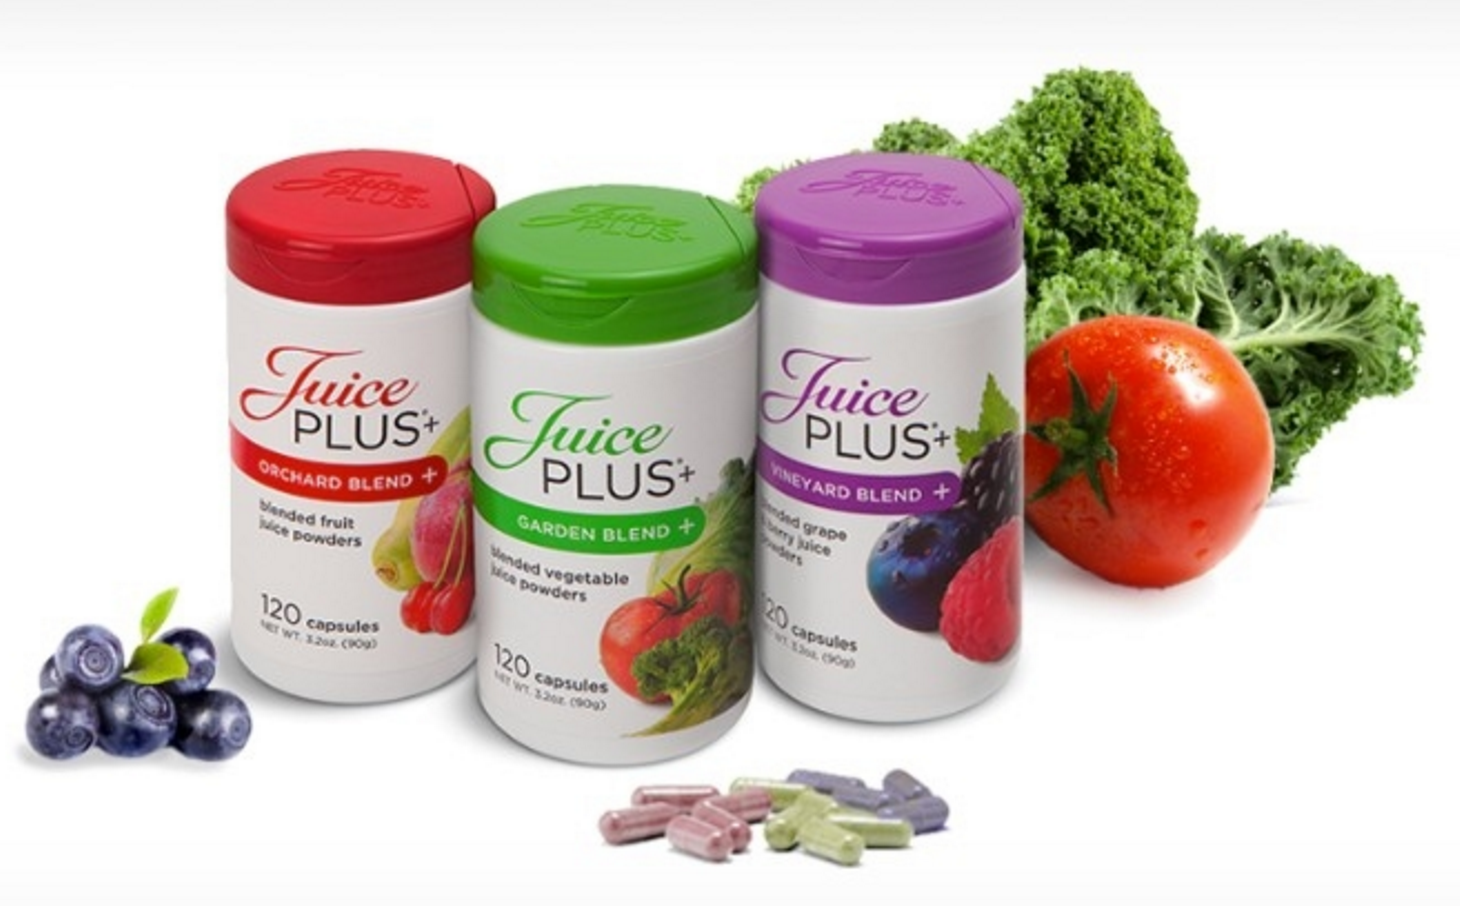 JuicePlus+ Veges/Fruit/Berries & Grains